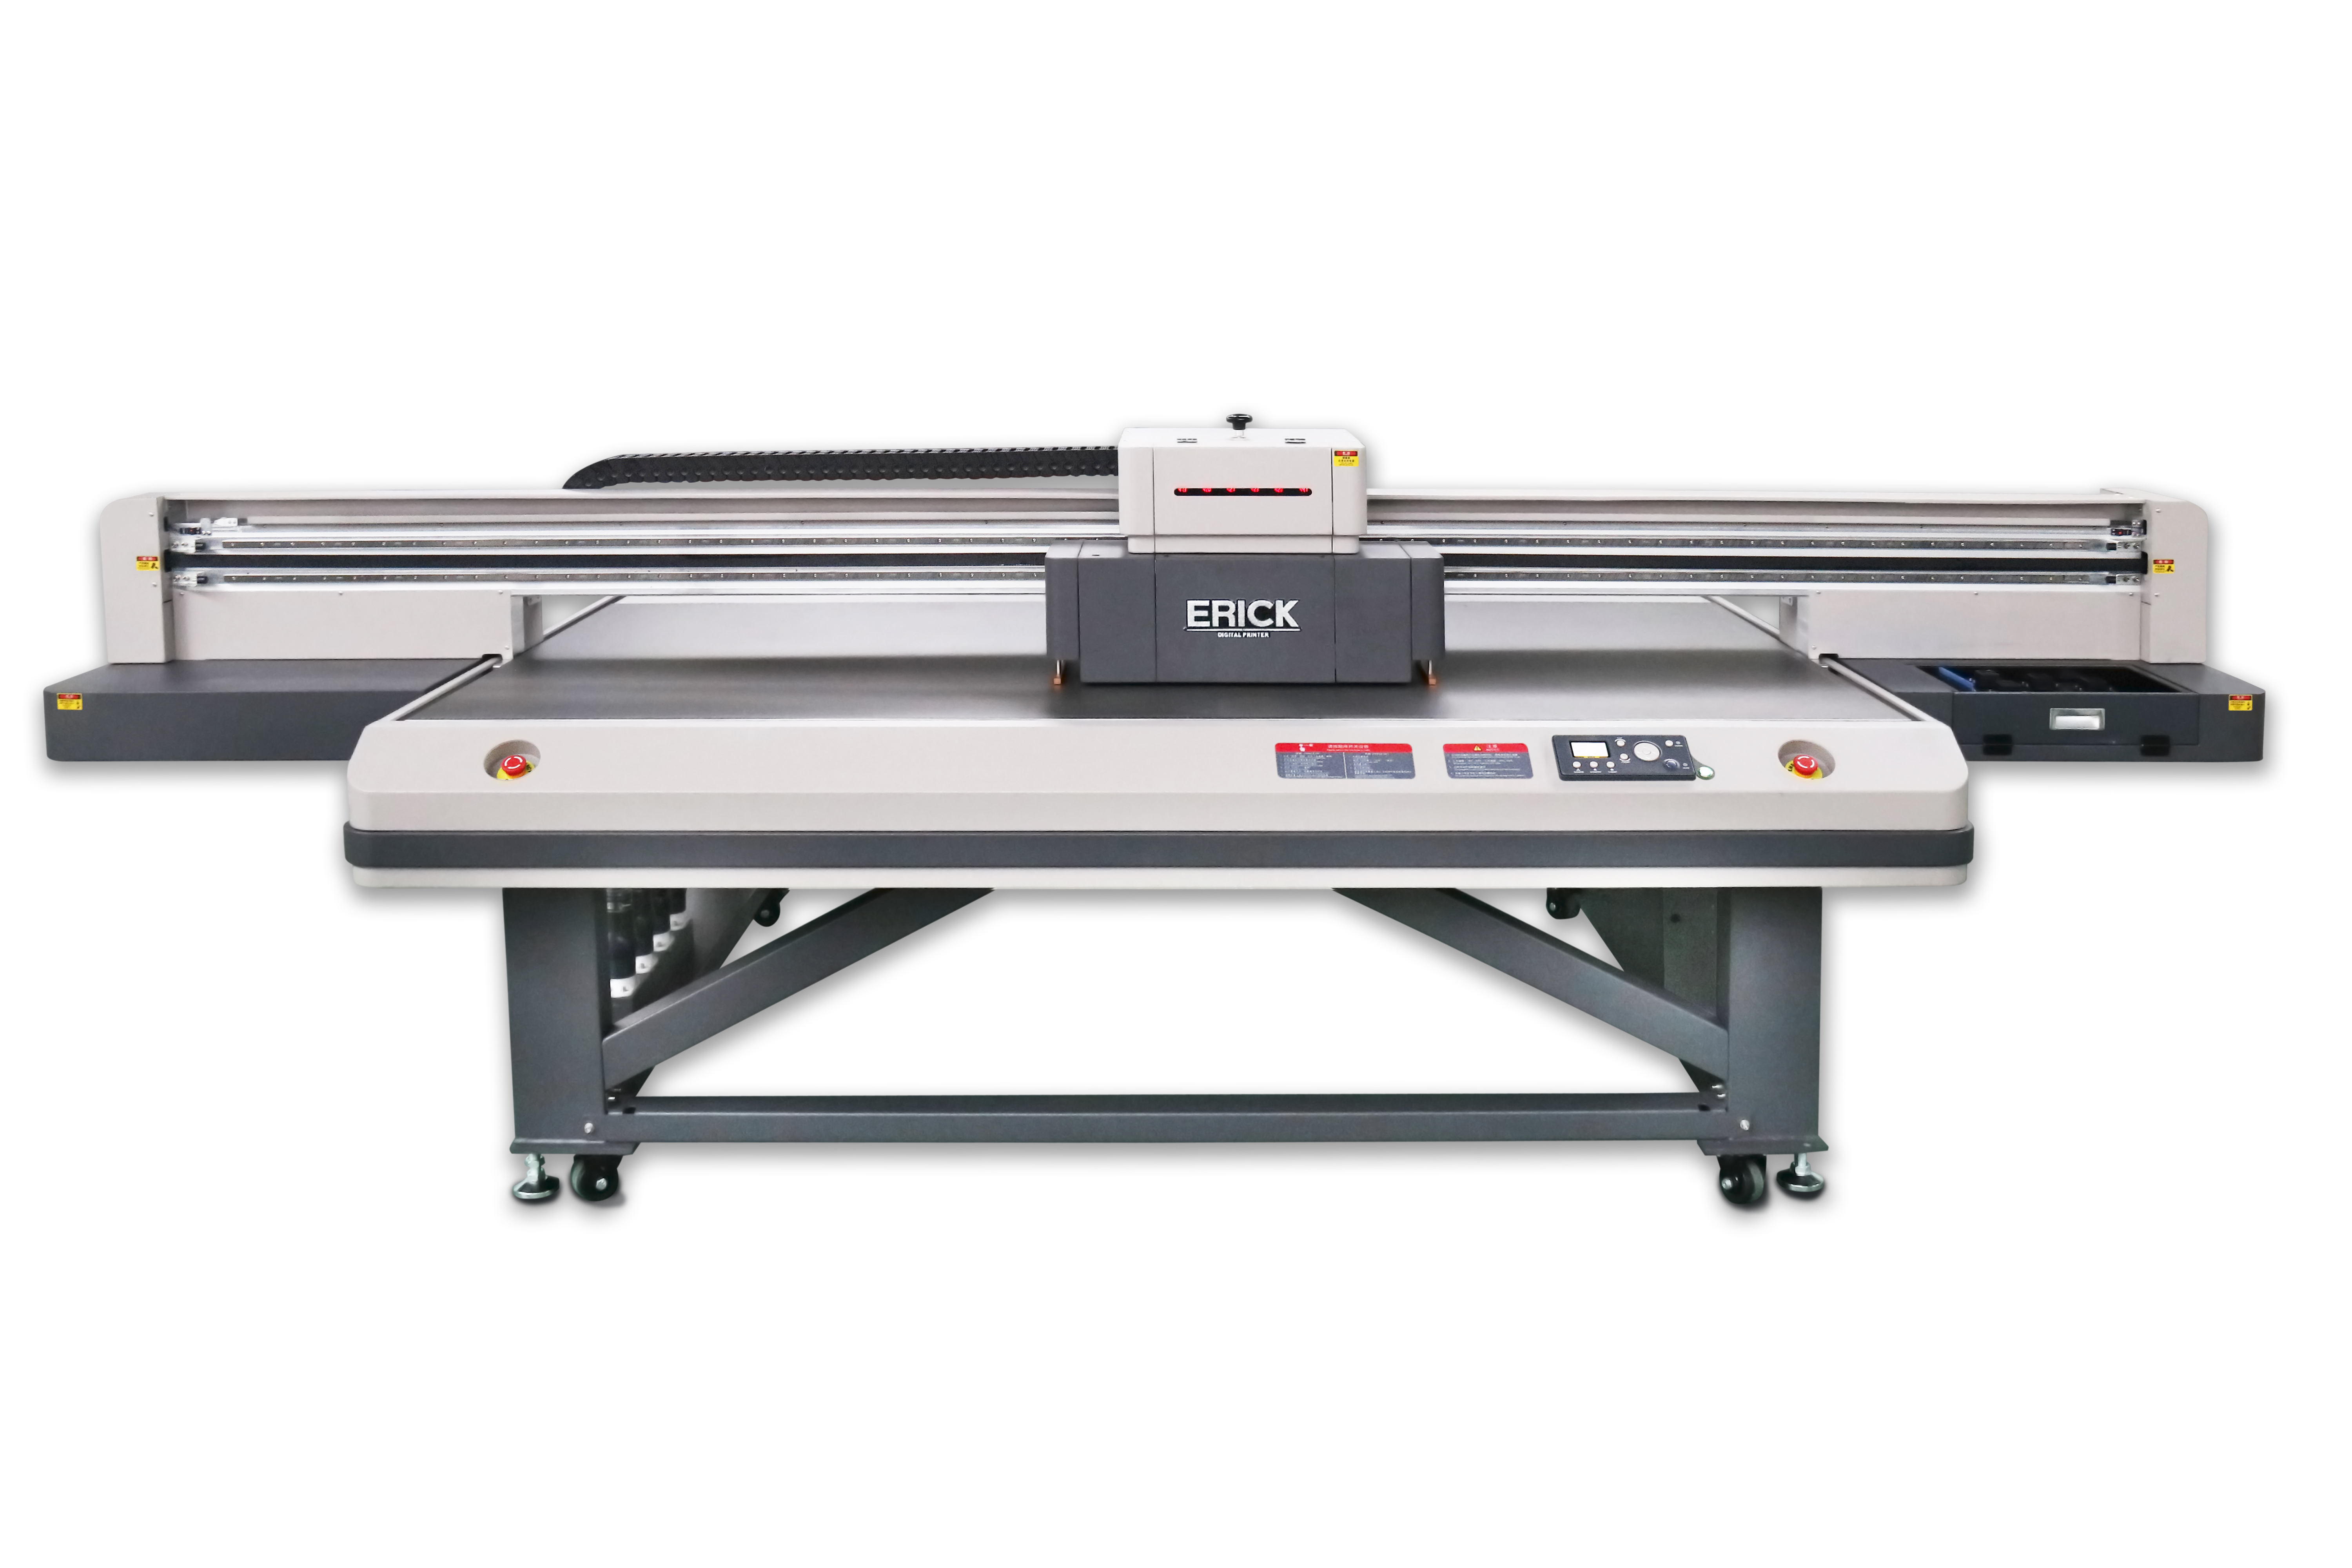 Large Format Flatbed UV Printer UV2513 Flatbed Printer Machine Manufacturer Supplier